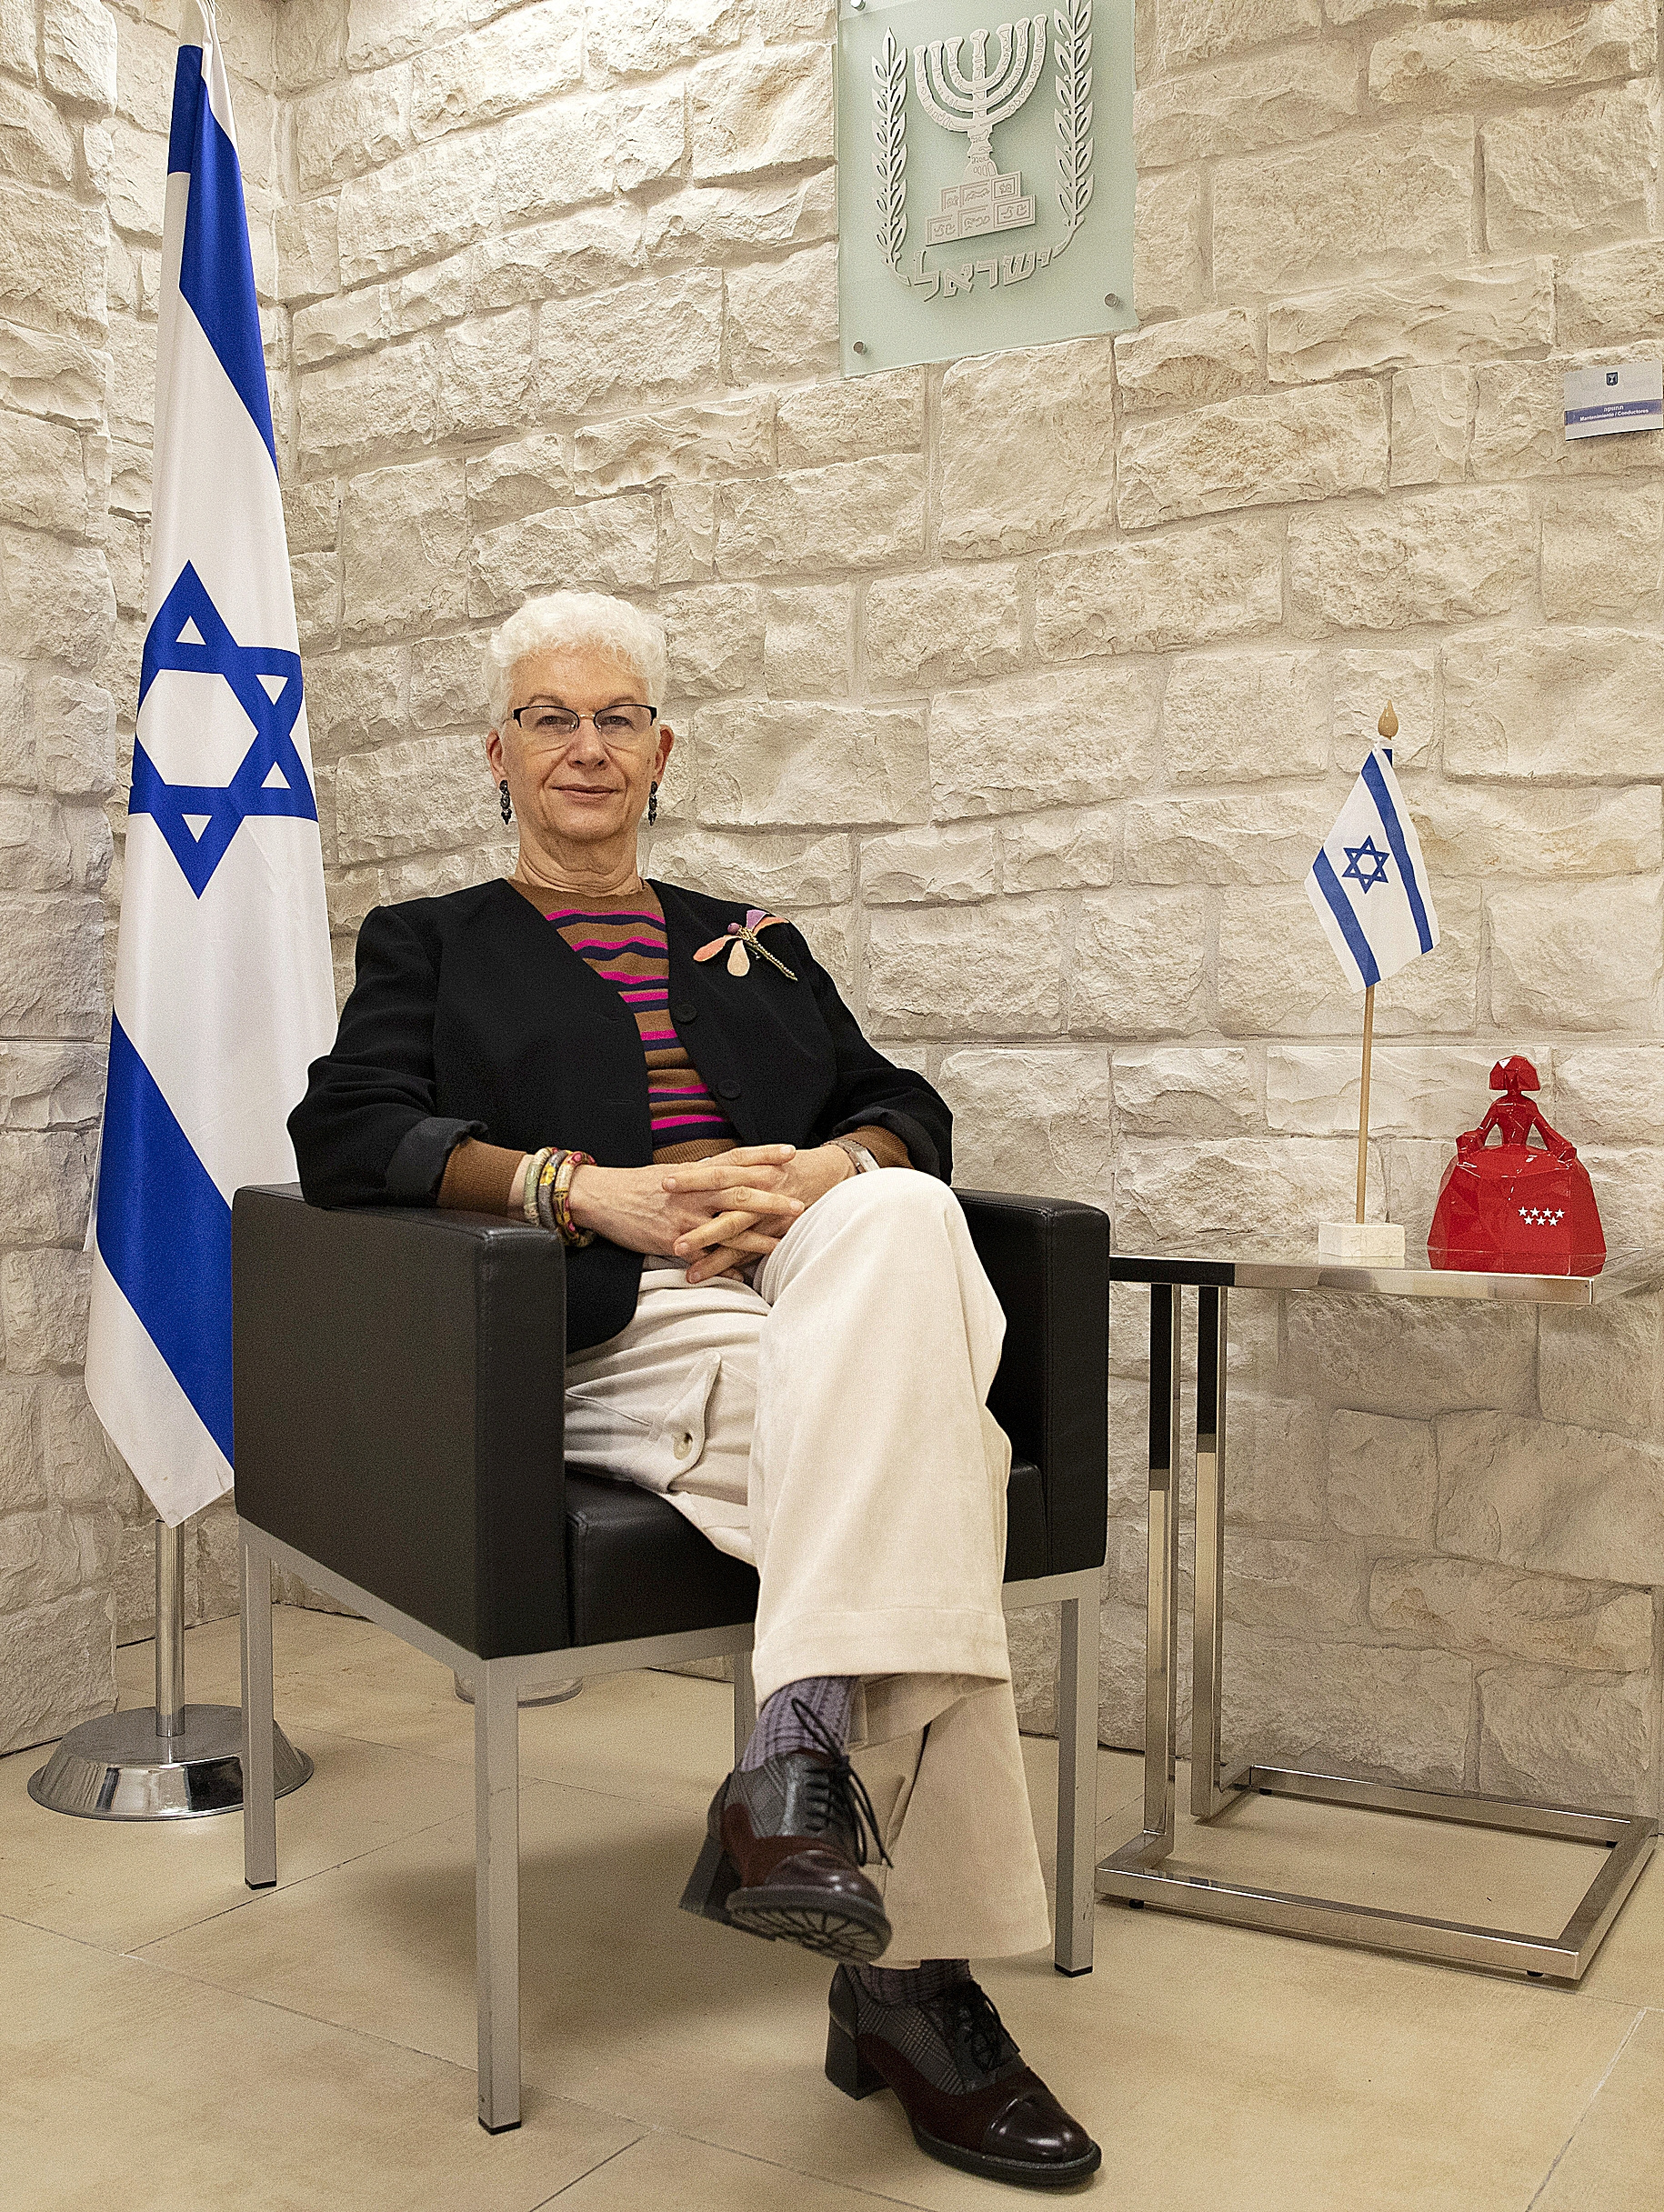 La embajadora de Israel en Espaa, antes de la entrevista.